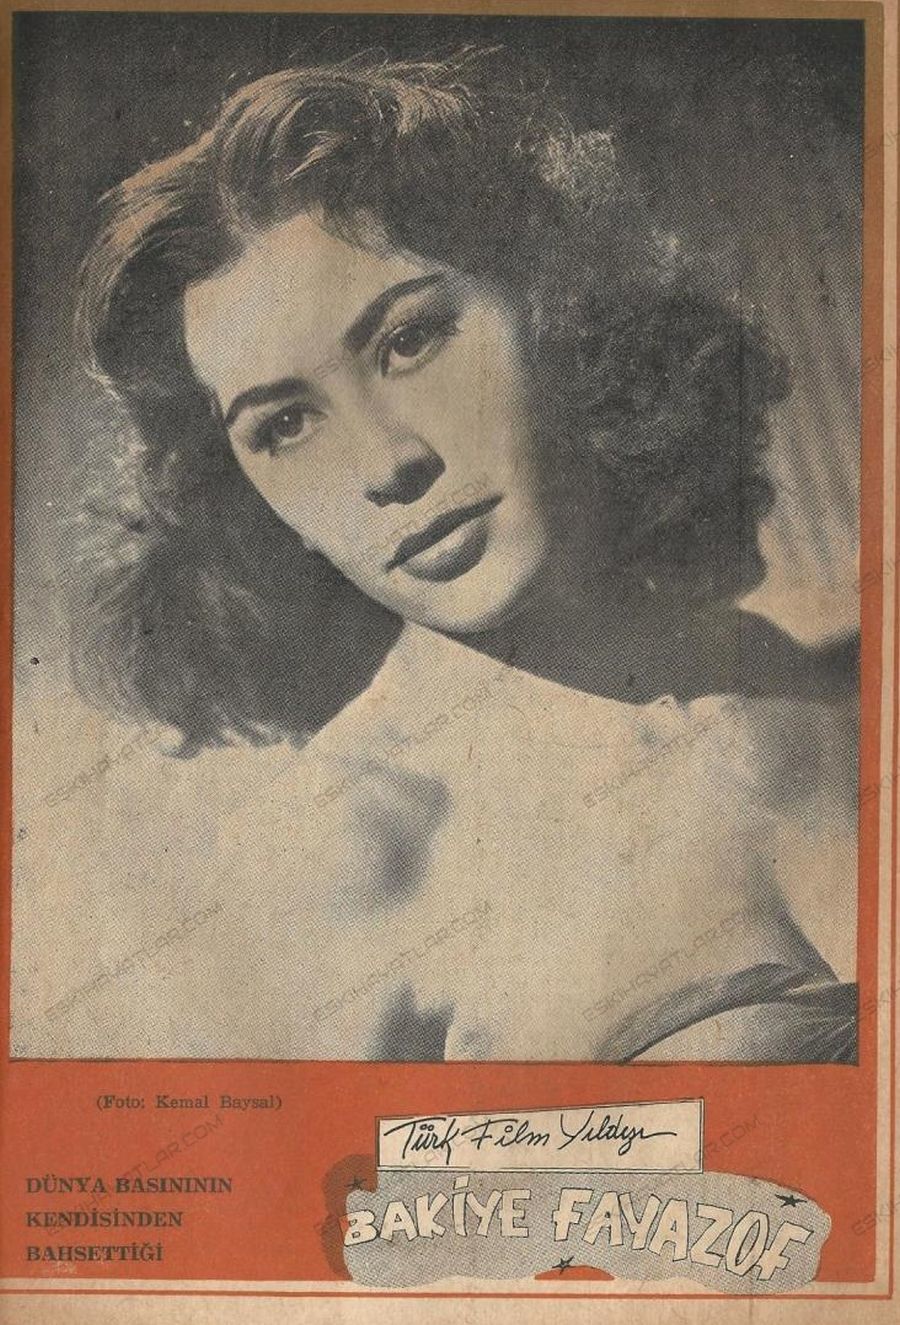 0182-bakiye-fayazof-fotografi-1962-aydabir-dergisi